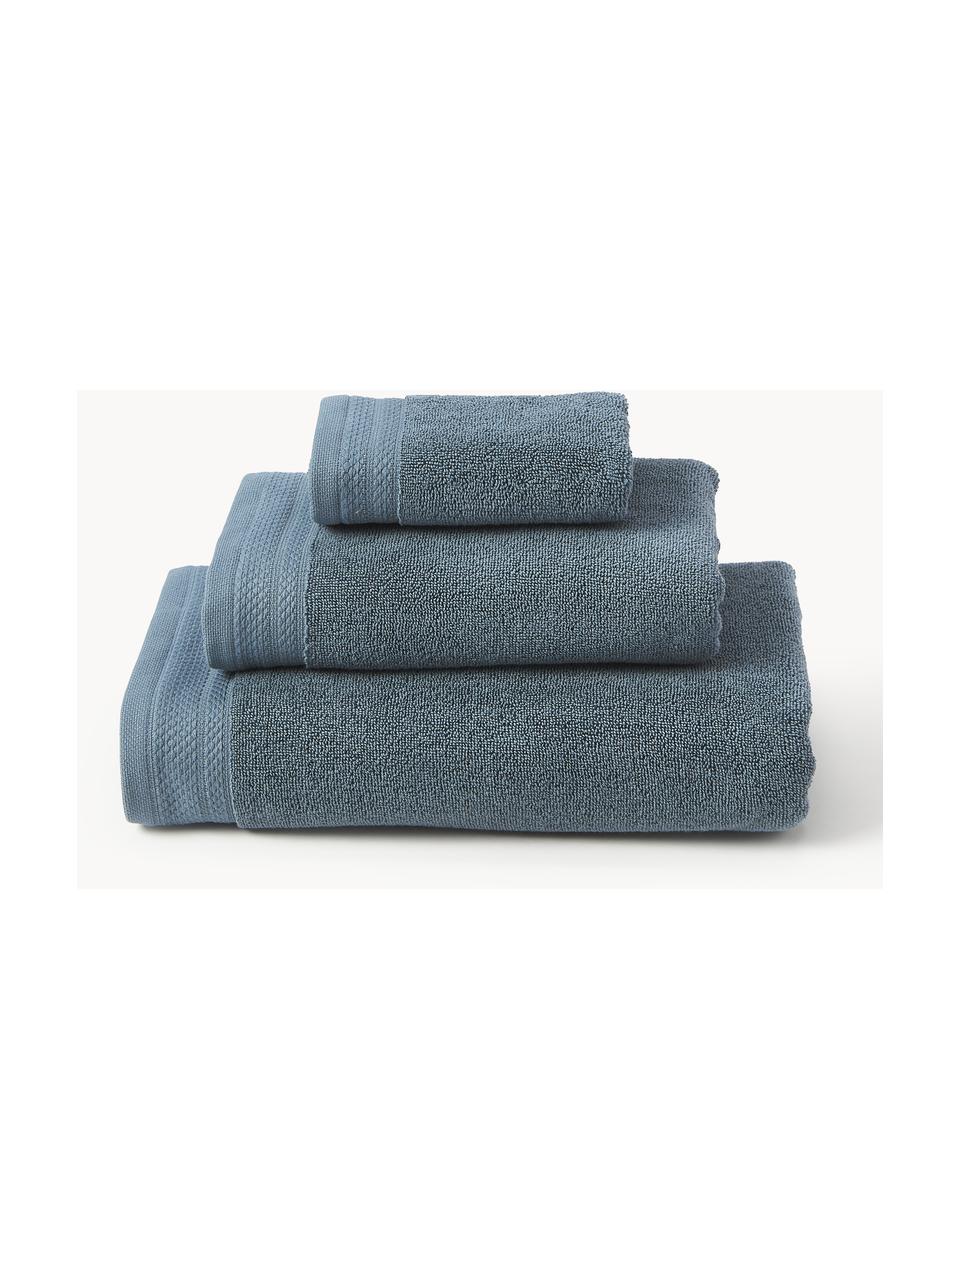 Lot de serviettes de bain en coton bio Premium, tailles variées, Bleu pétrole, 6 éléments (2 serviettes invité, 2 serviettes de toilette et 2 draps de bain)